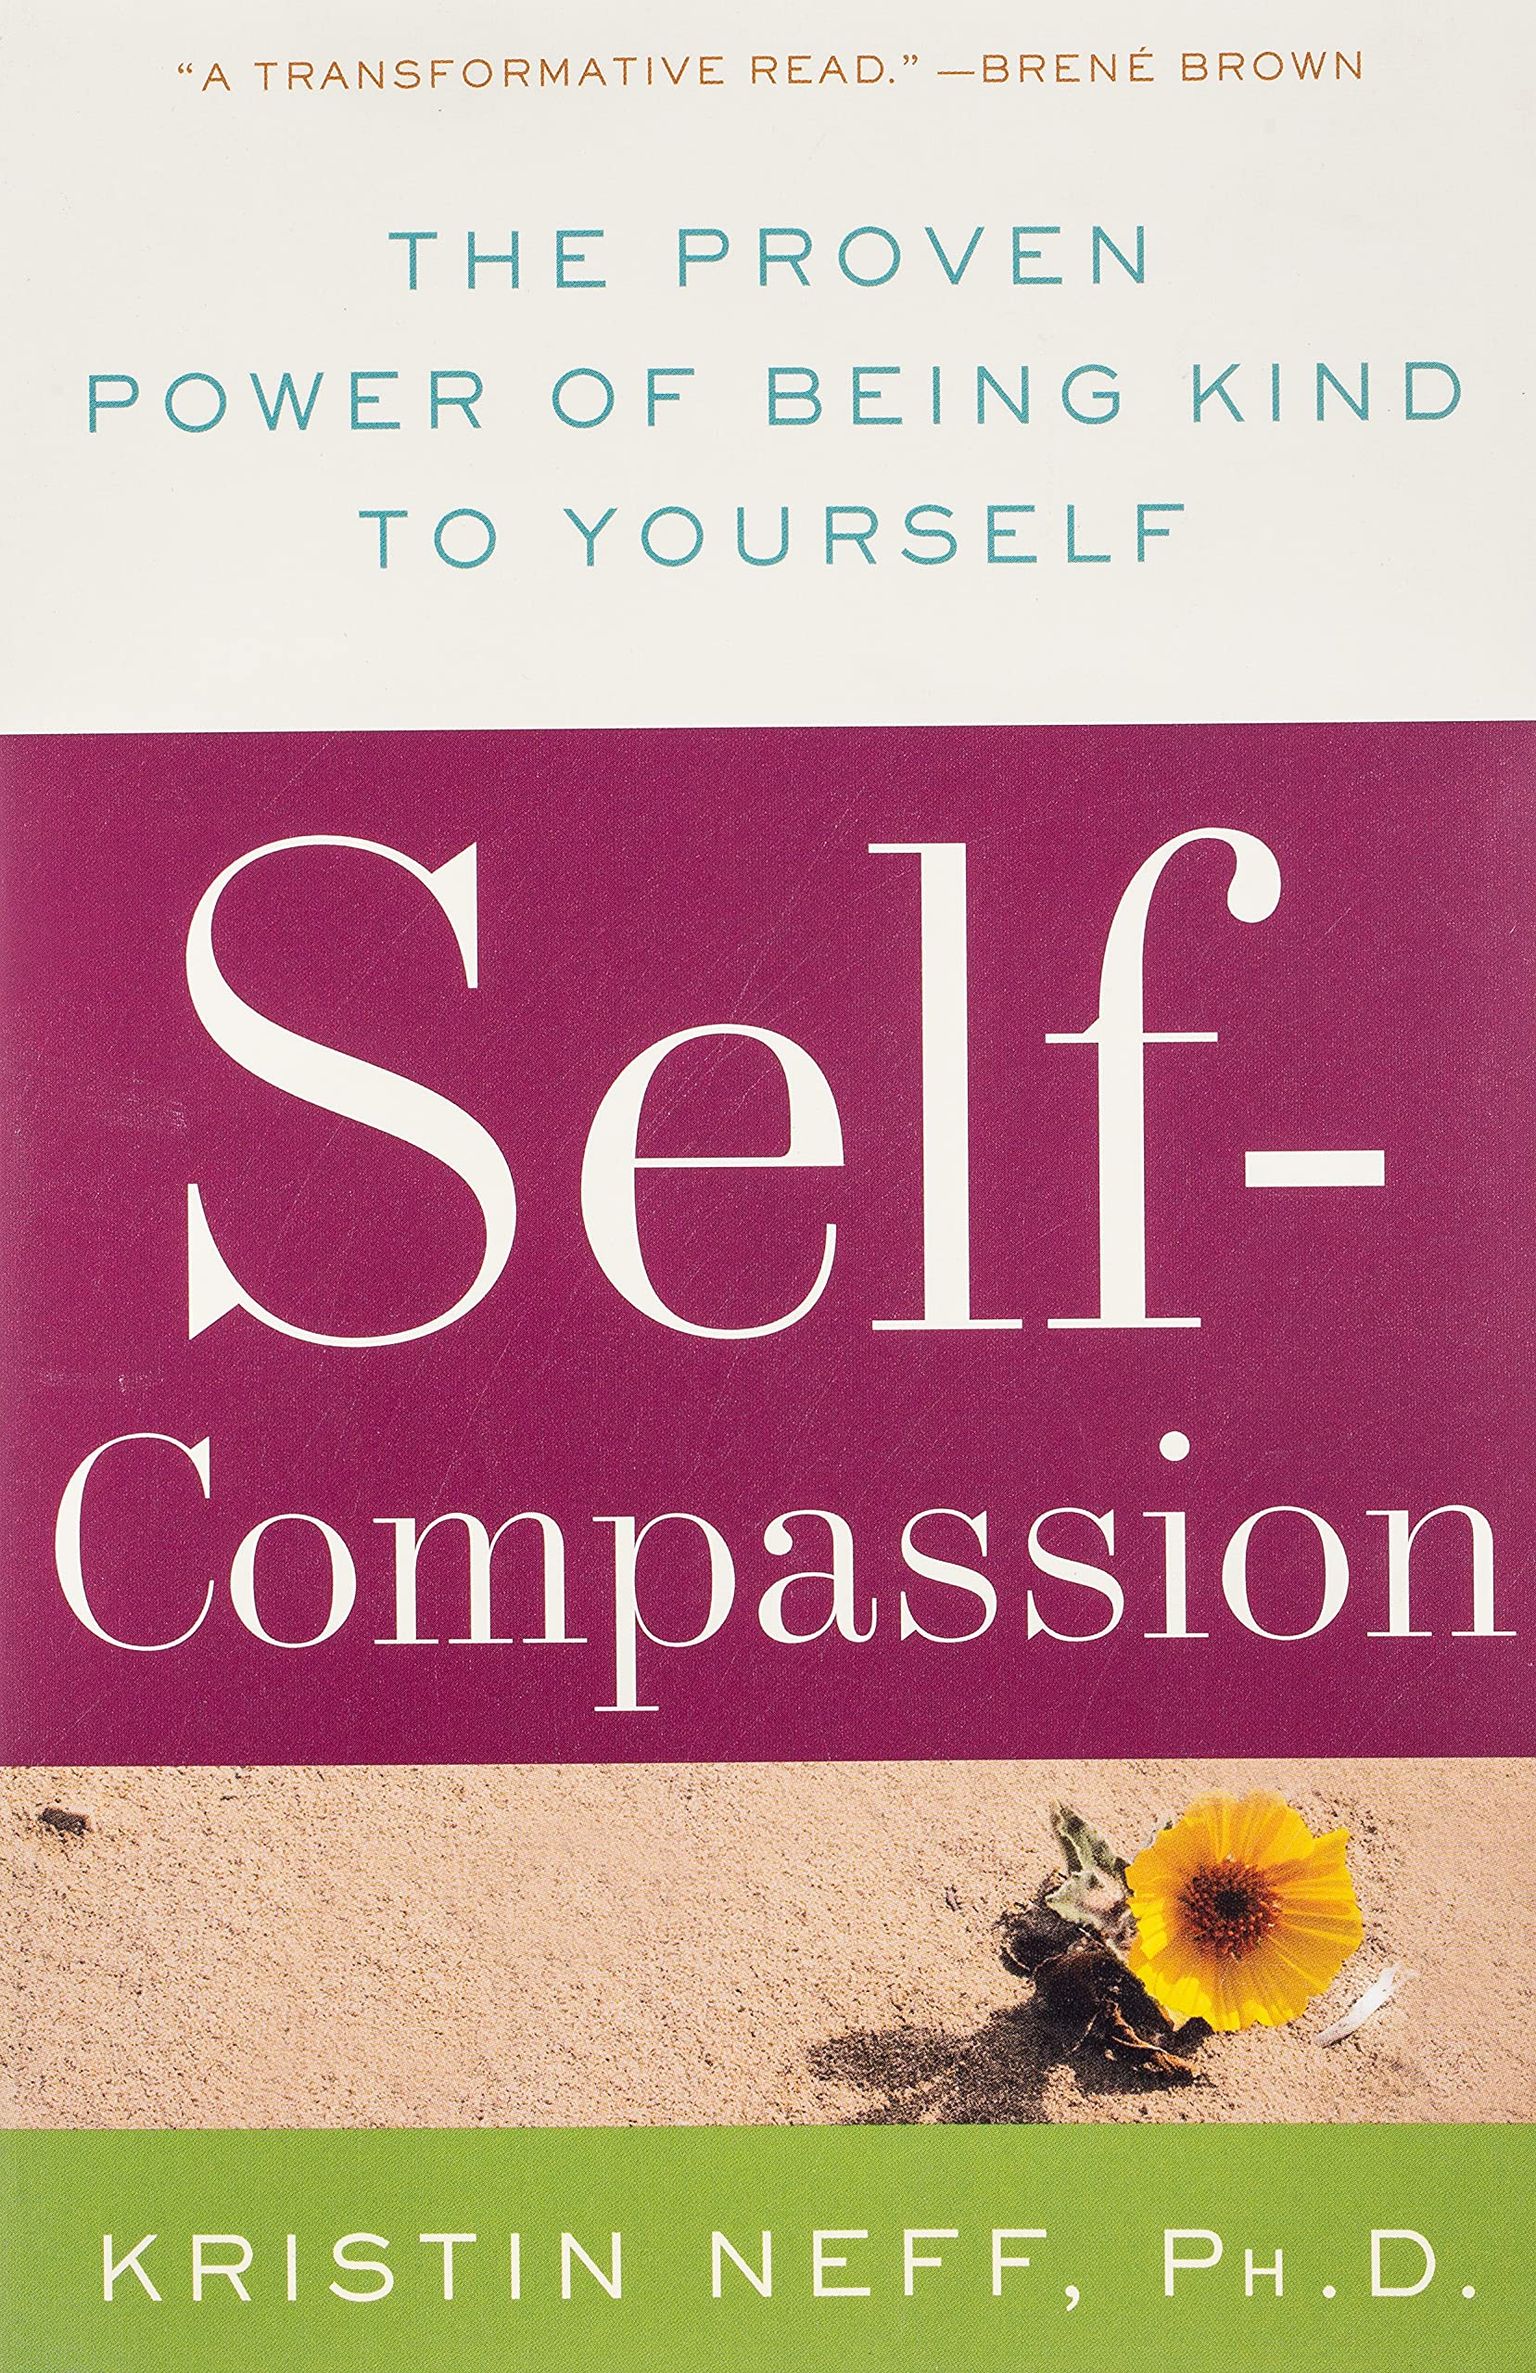 Self-Compassion